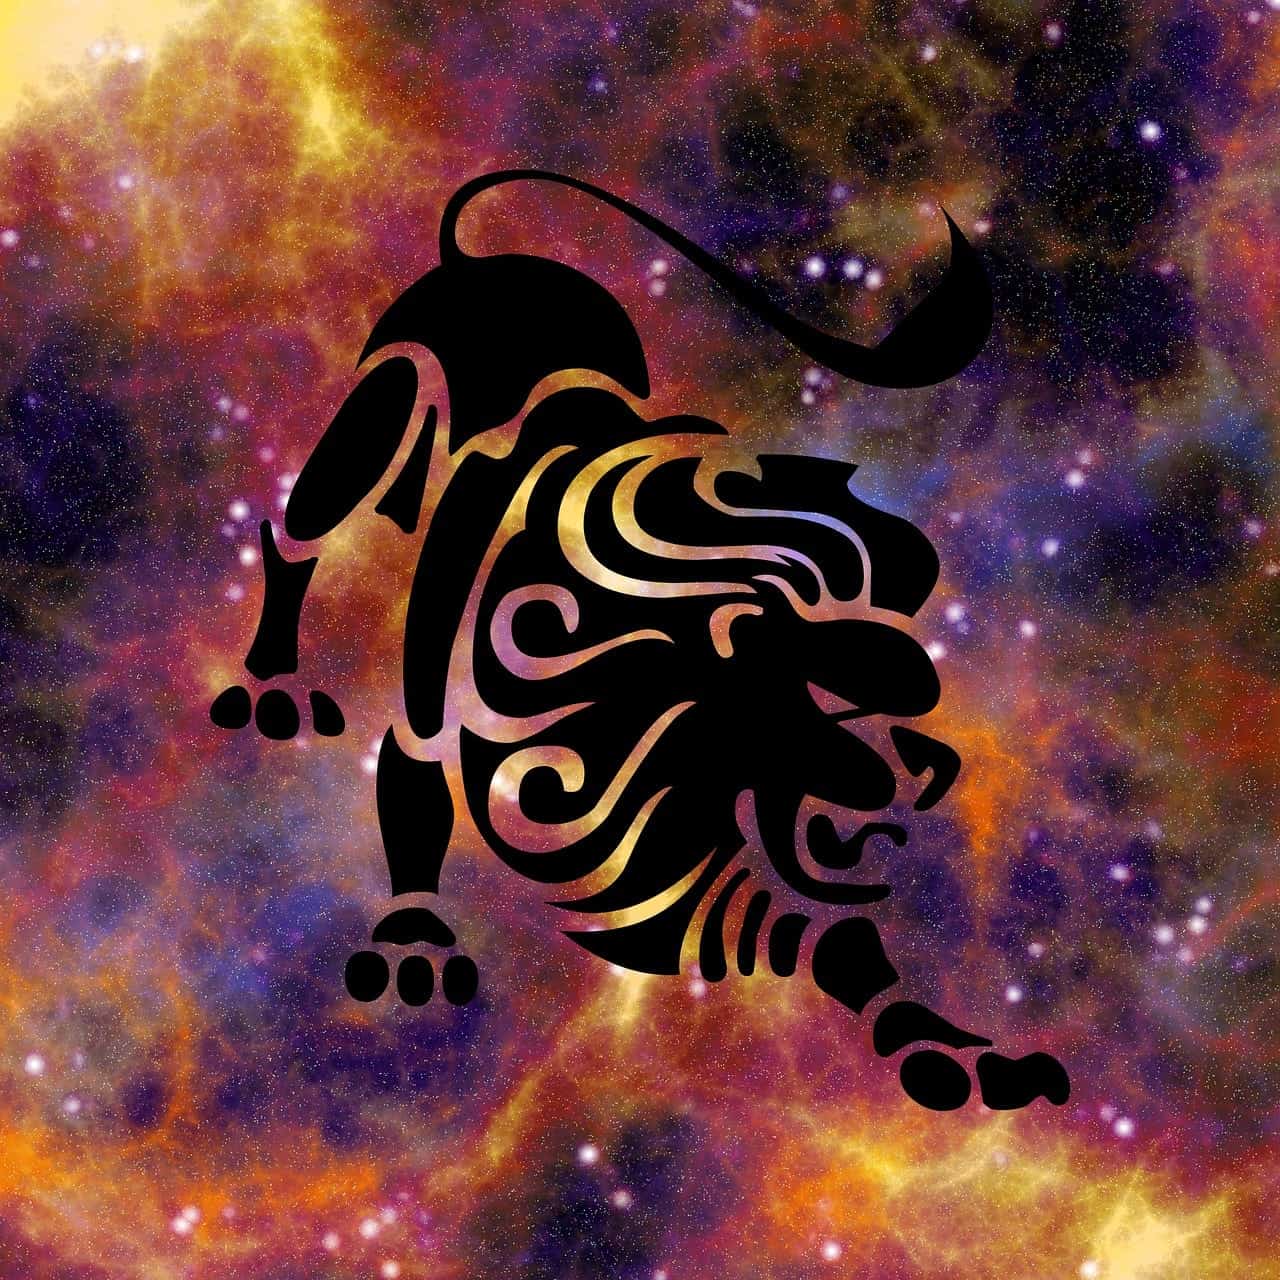 horoscopo semanal gratis leo horóscopo de la semana, del 13 al 19 de mayo 2019, ¡grandes propuest ID187657 - hermandadblanca.org